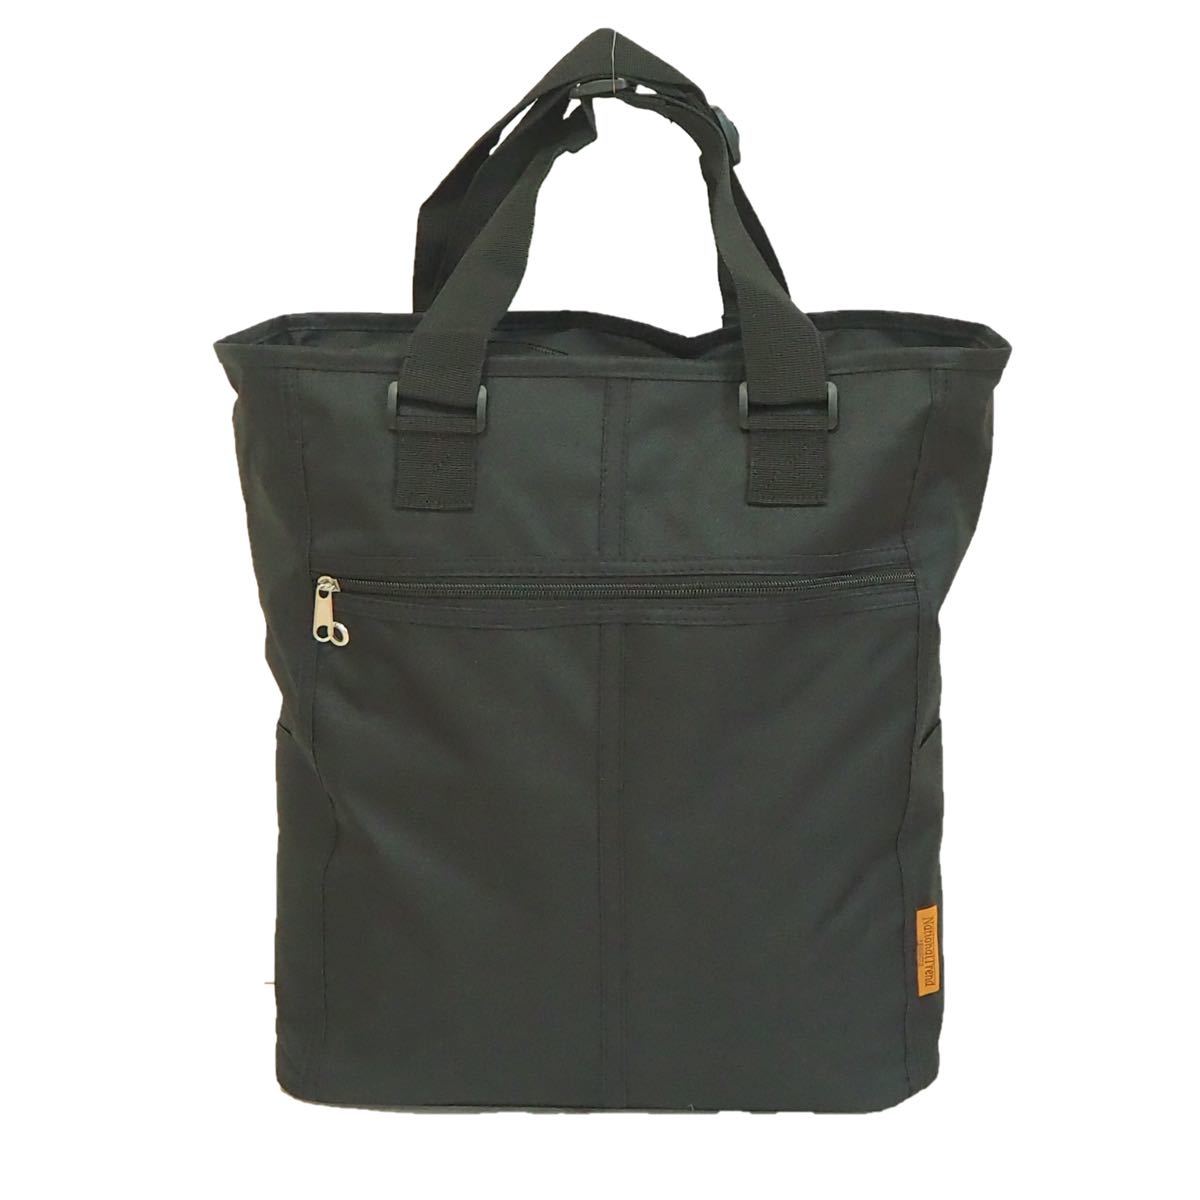 【新品・ブラック】☆トートバッグ☆ エコバッグ ショッピング 通勤 通学 マザーズバッグ スポーツバッグ 旅行バッグ